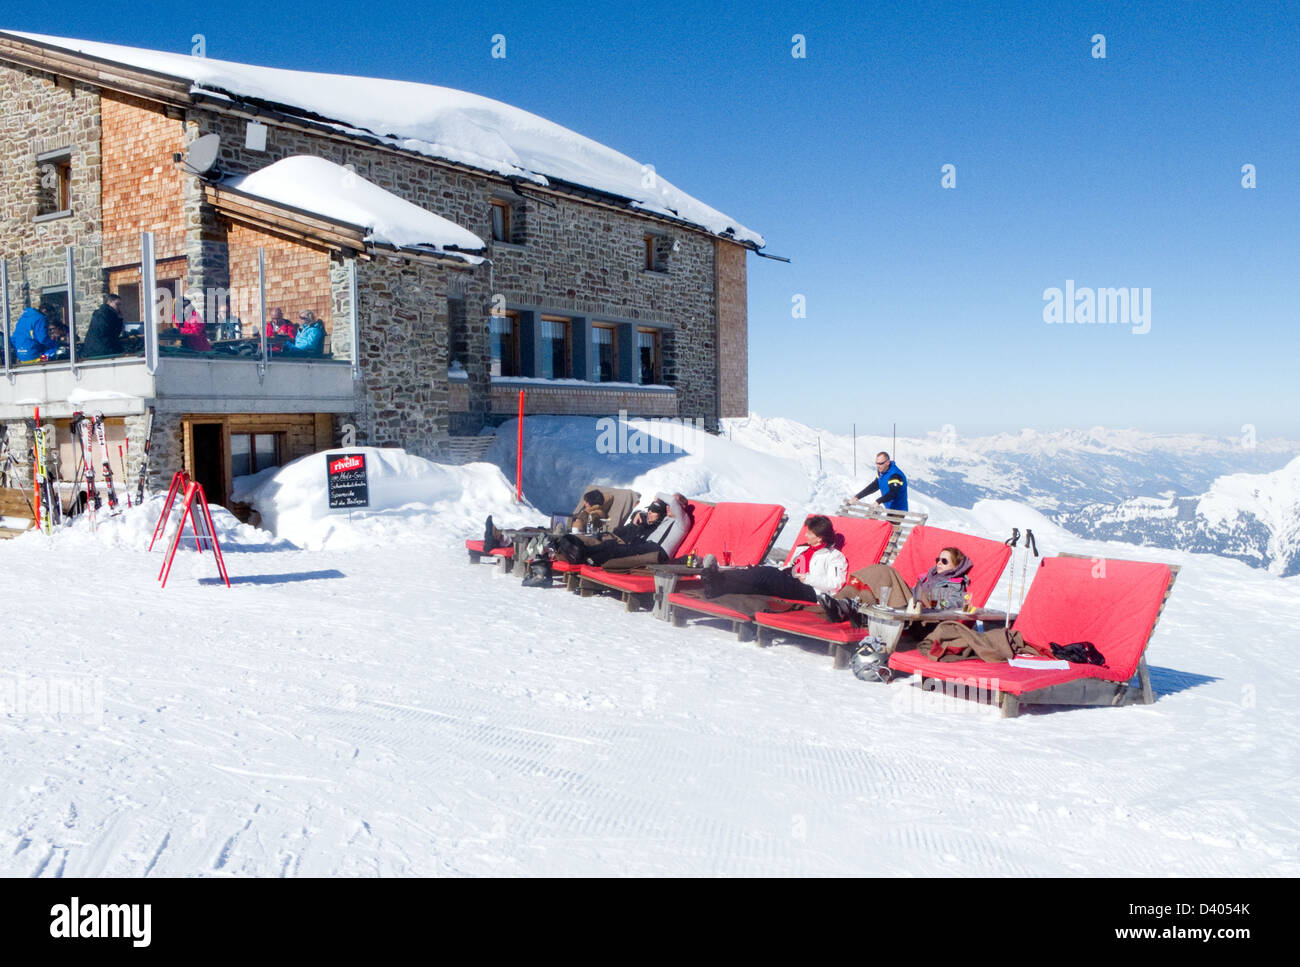 Les gens le ski, les skieurs ayant un repos - pause à Bussang Hornli, Arosa, les Alpes, suisse europe Banque D'Images